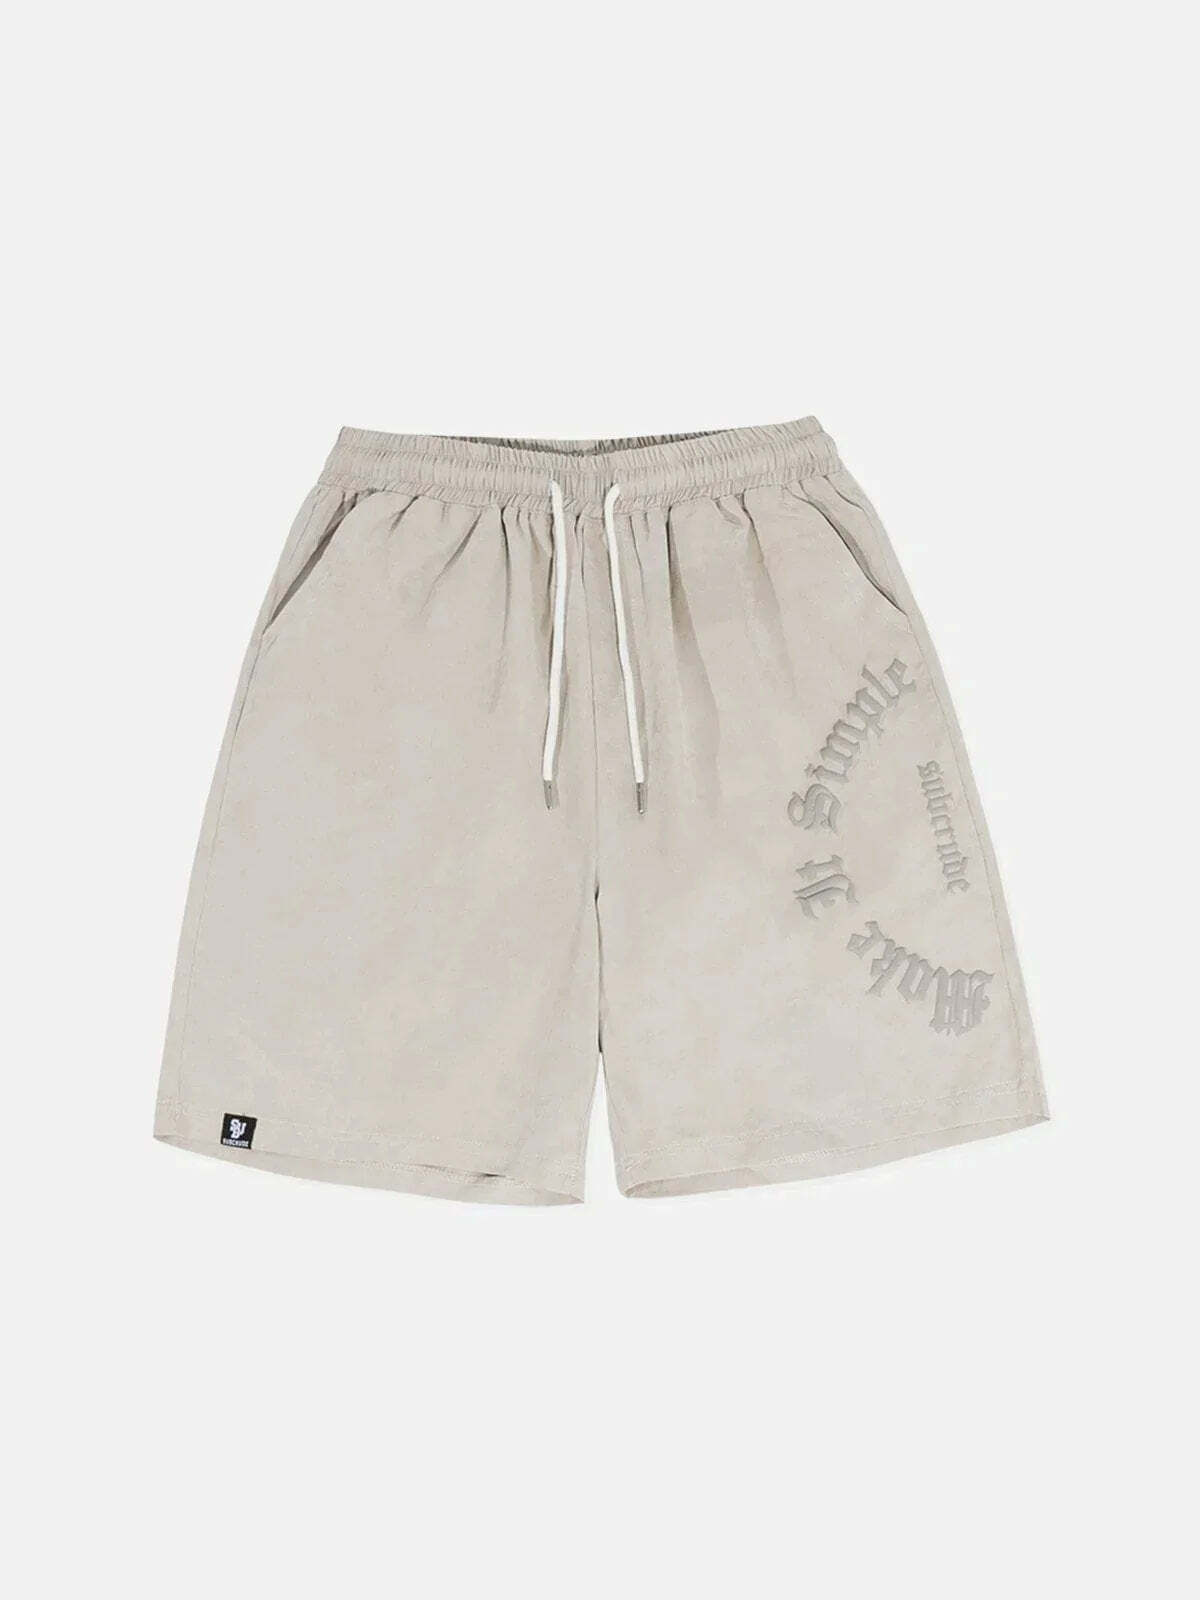 foam letter print shorts edgy y2k streetwear 7736